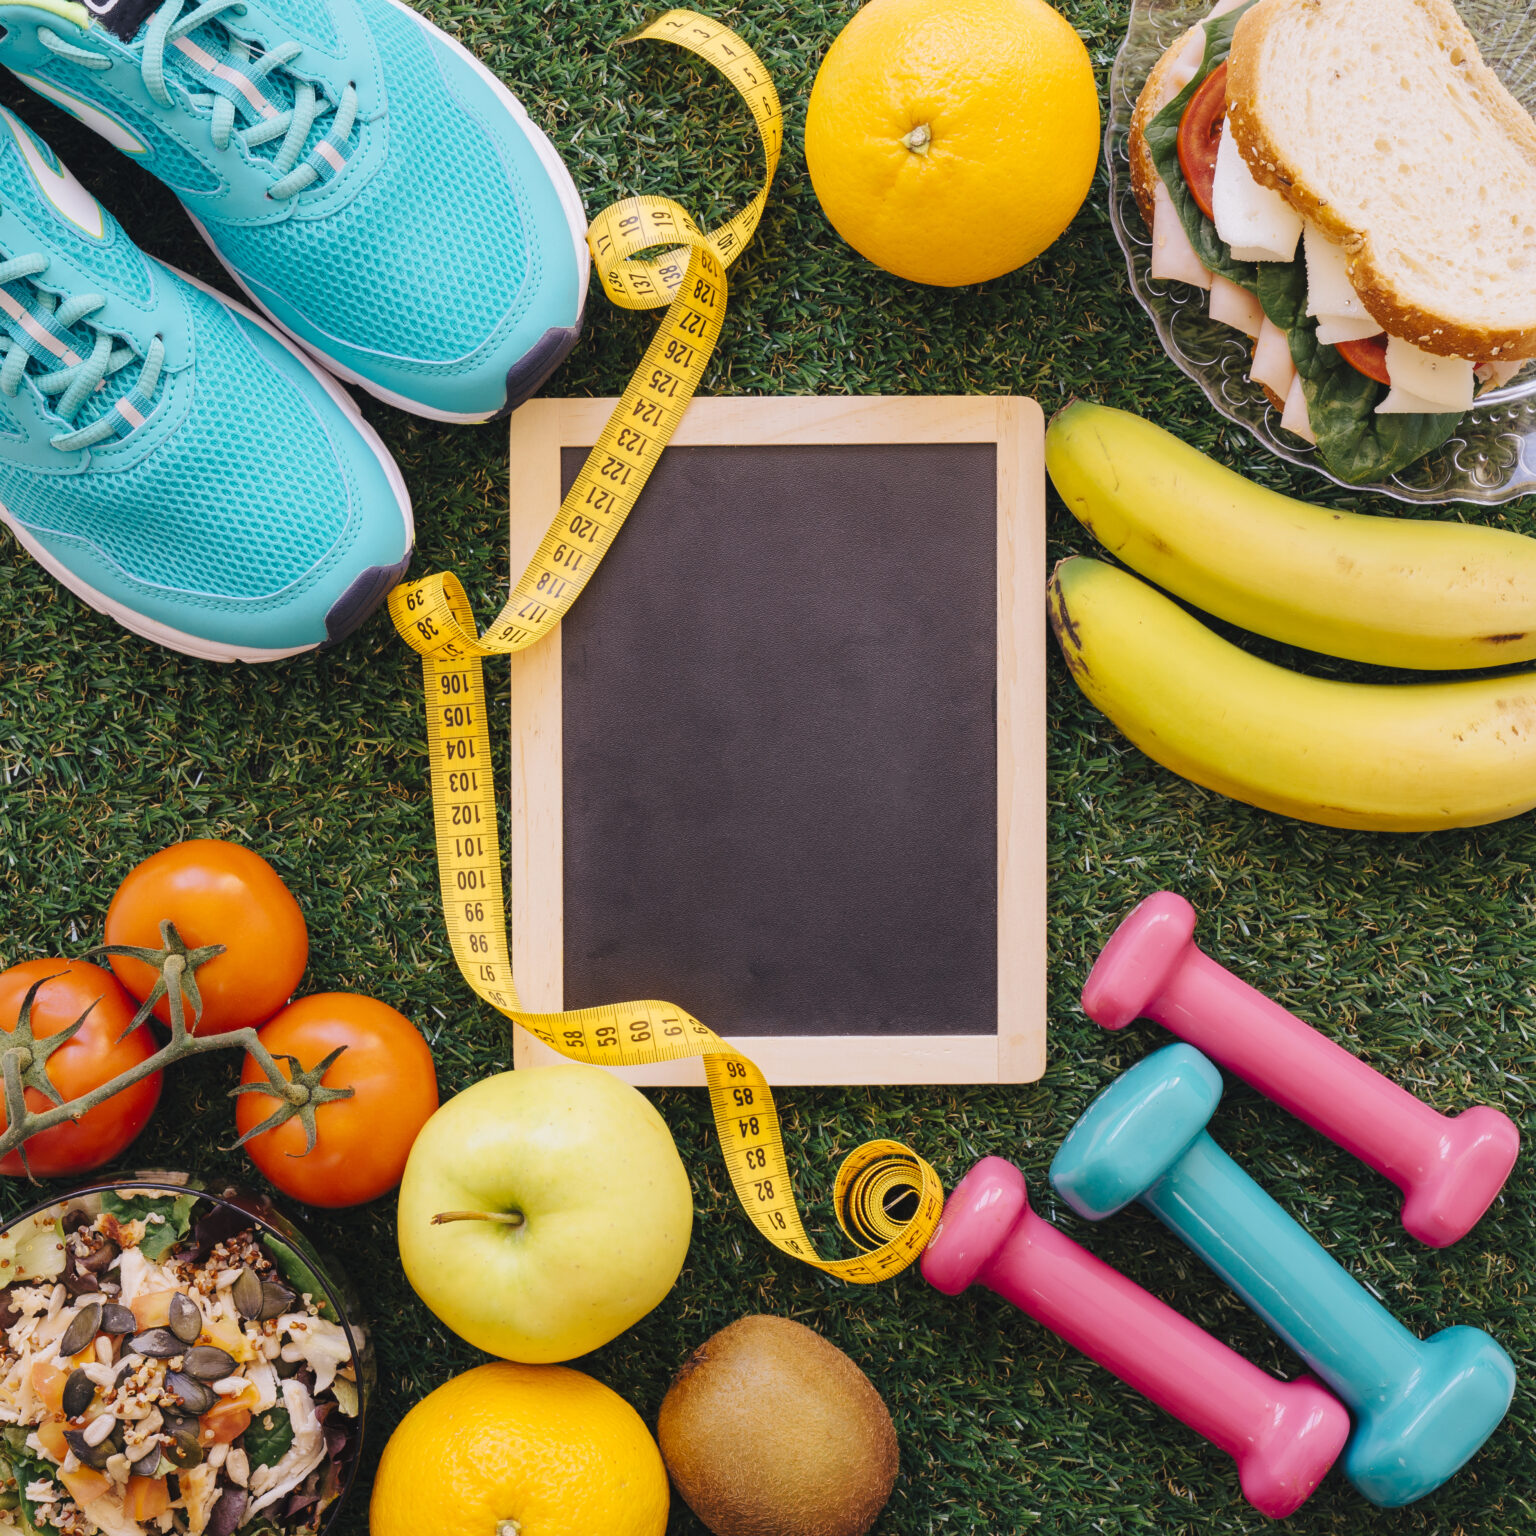 Imagen con pesas, metro , zapatillas, fruta, sandwich y tomates.